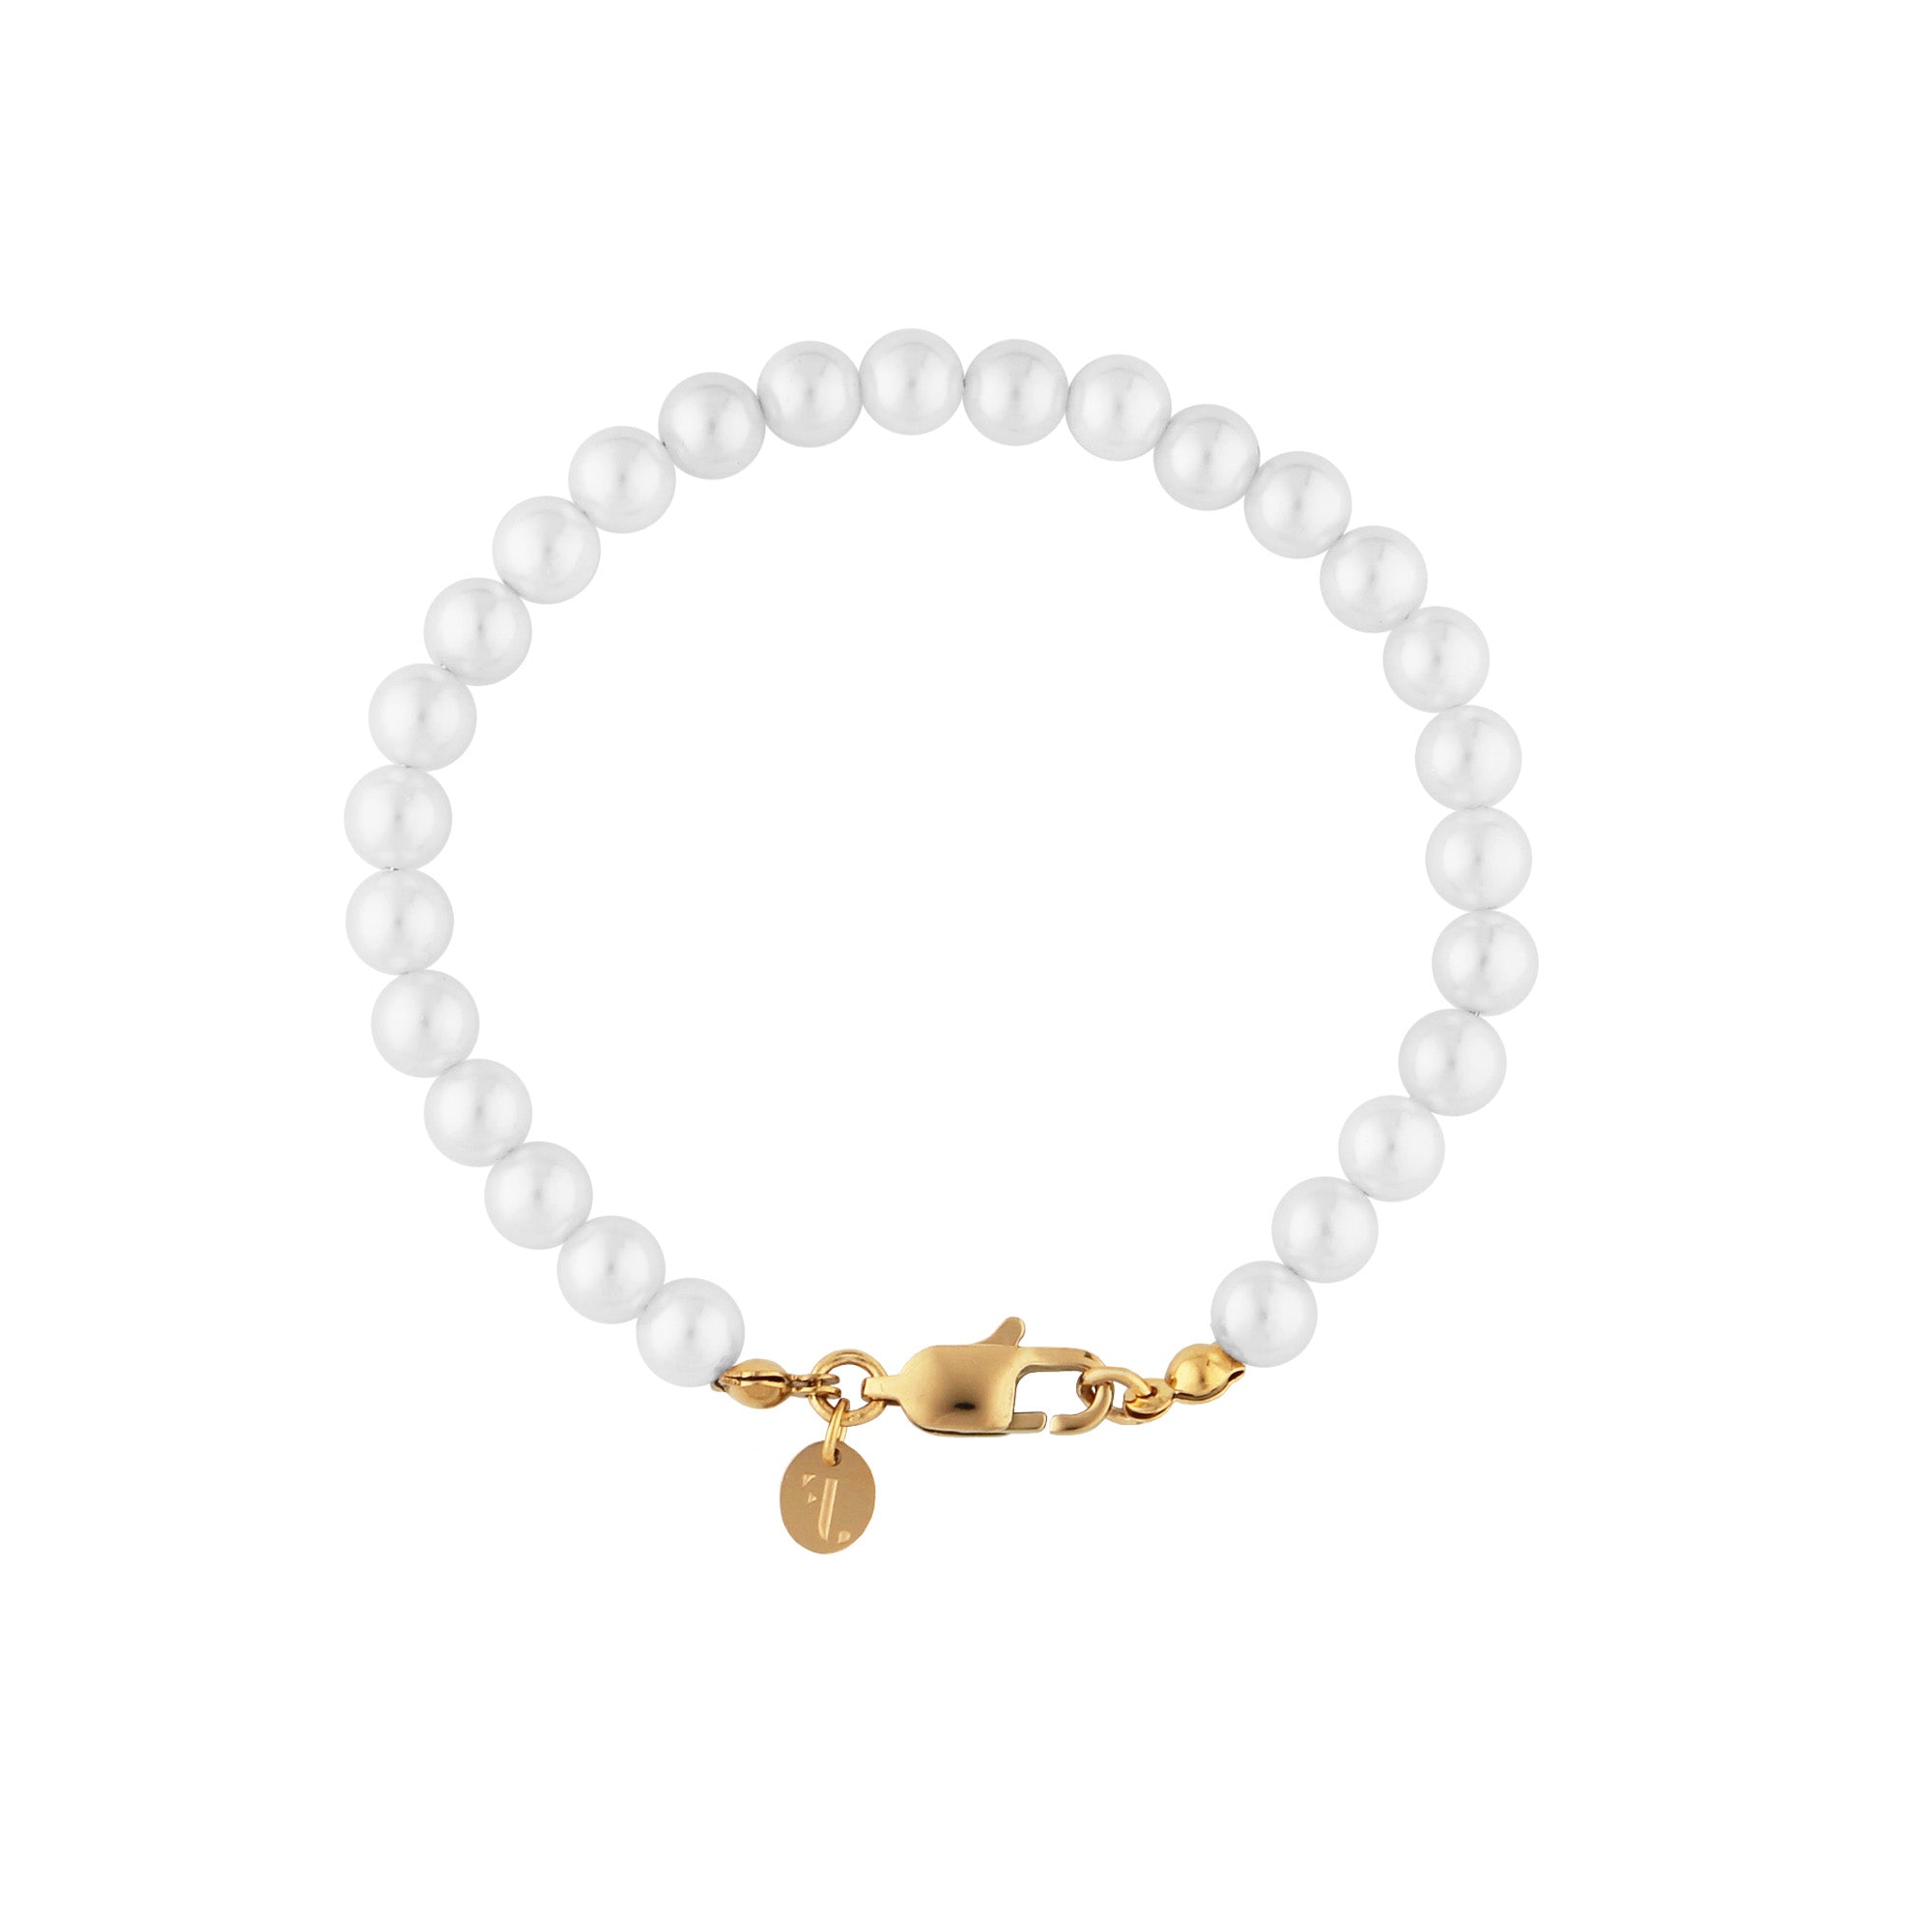 FJ Watches Var bracelet men women white pearls beads gold  6mm